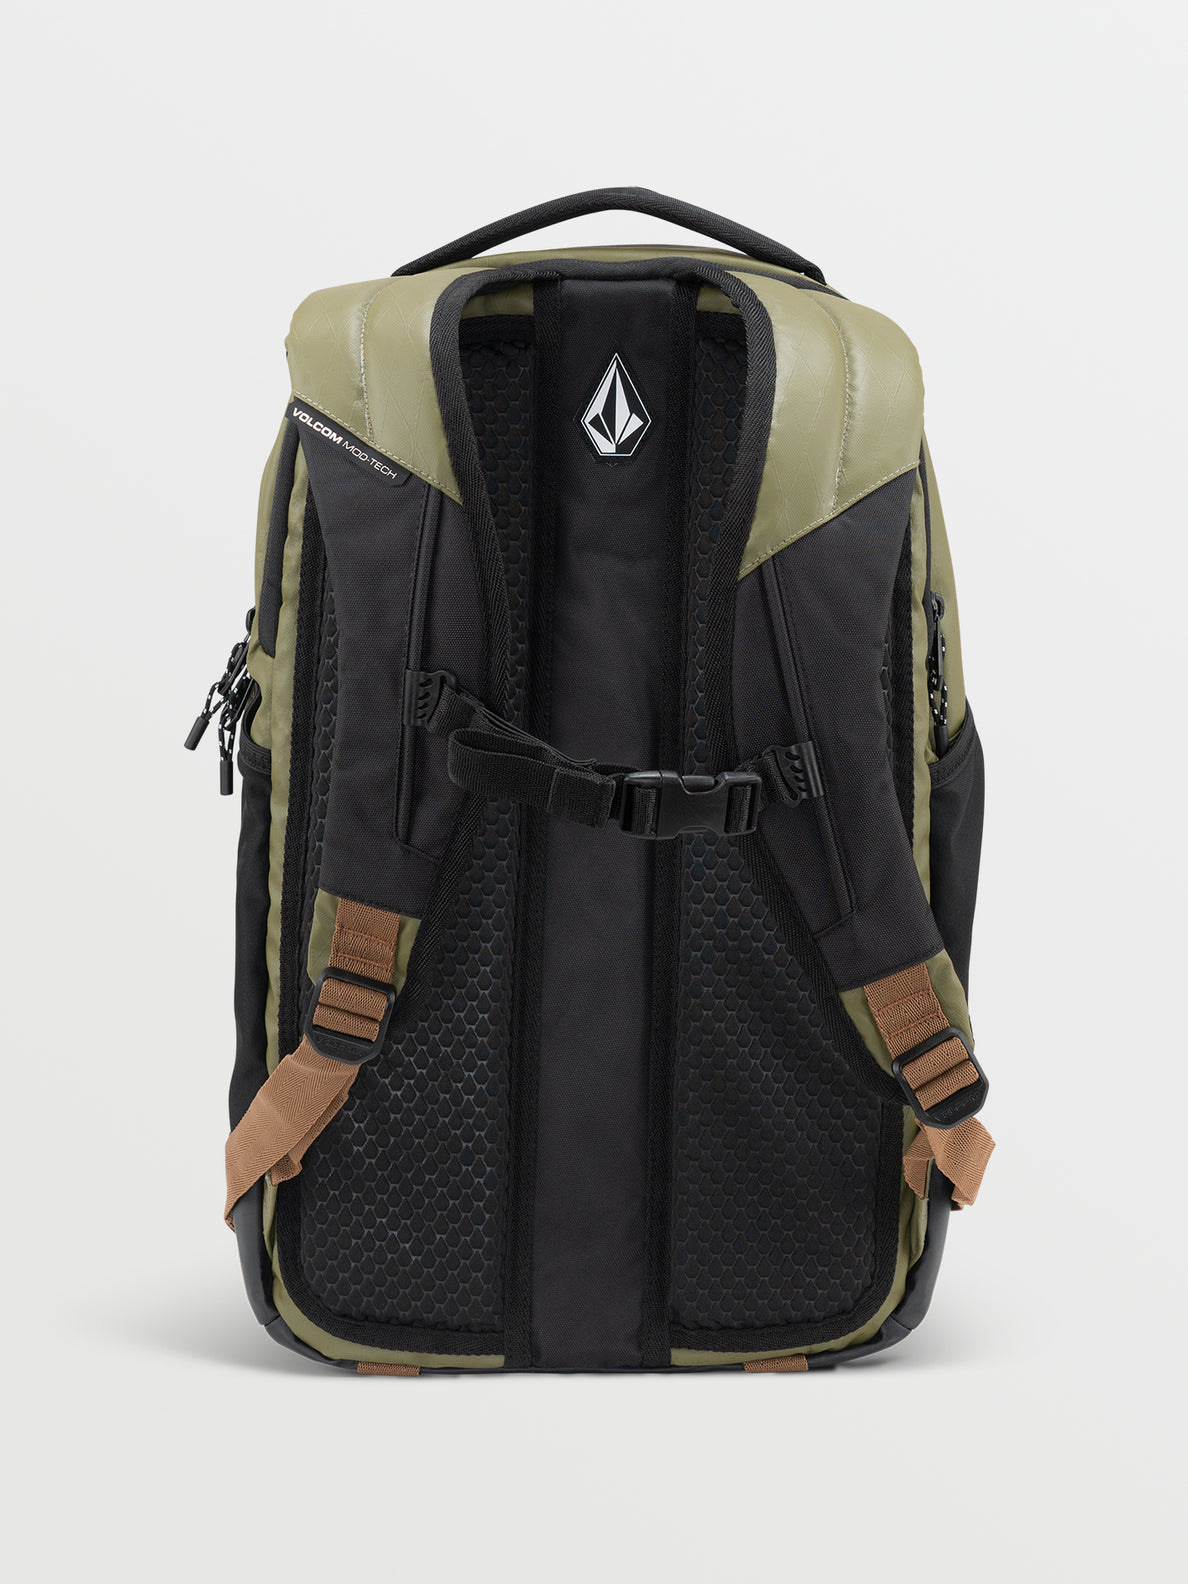 Venture Backpack - Olive